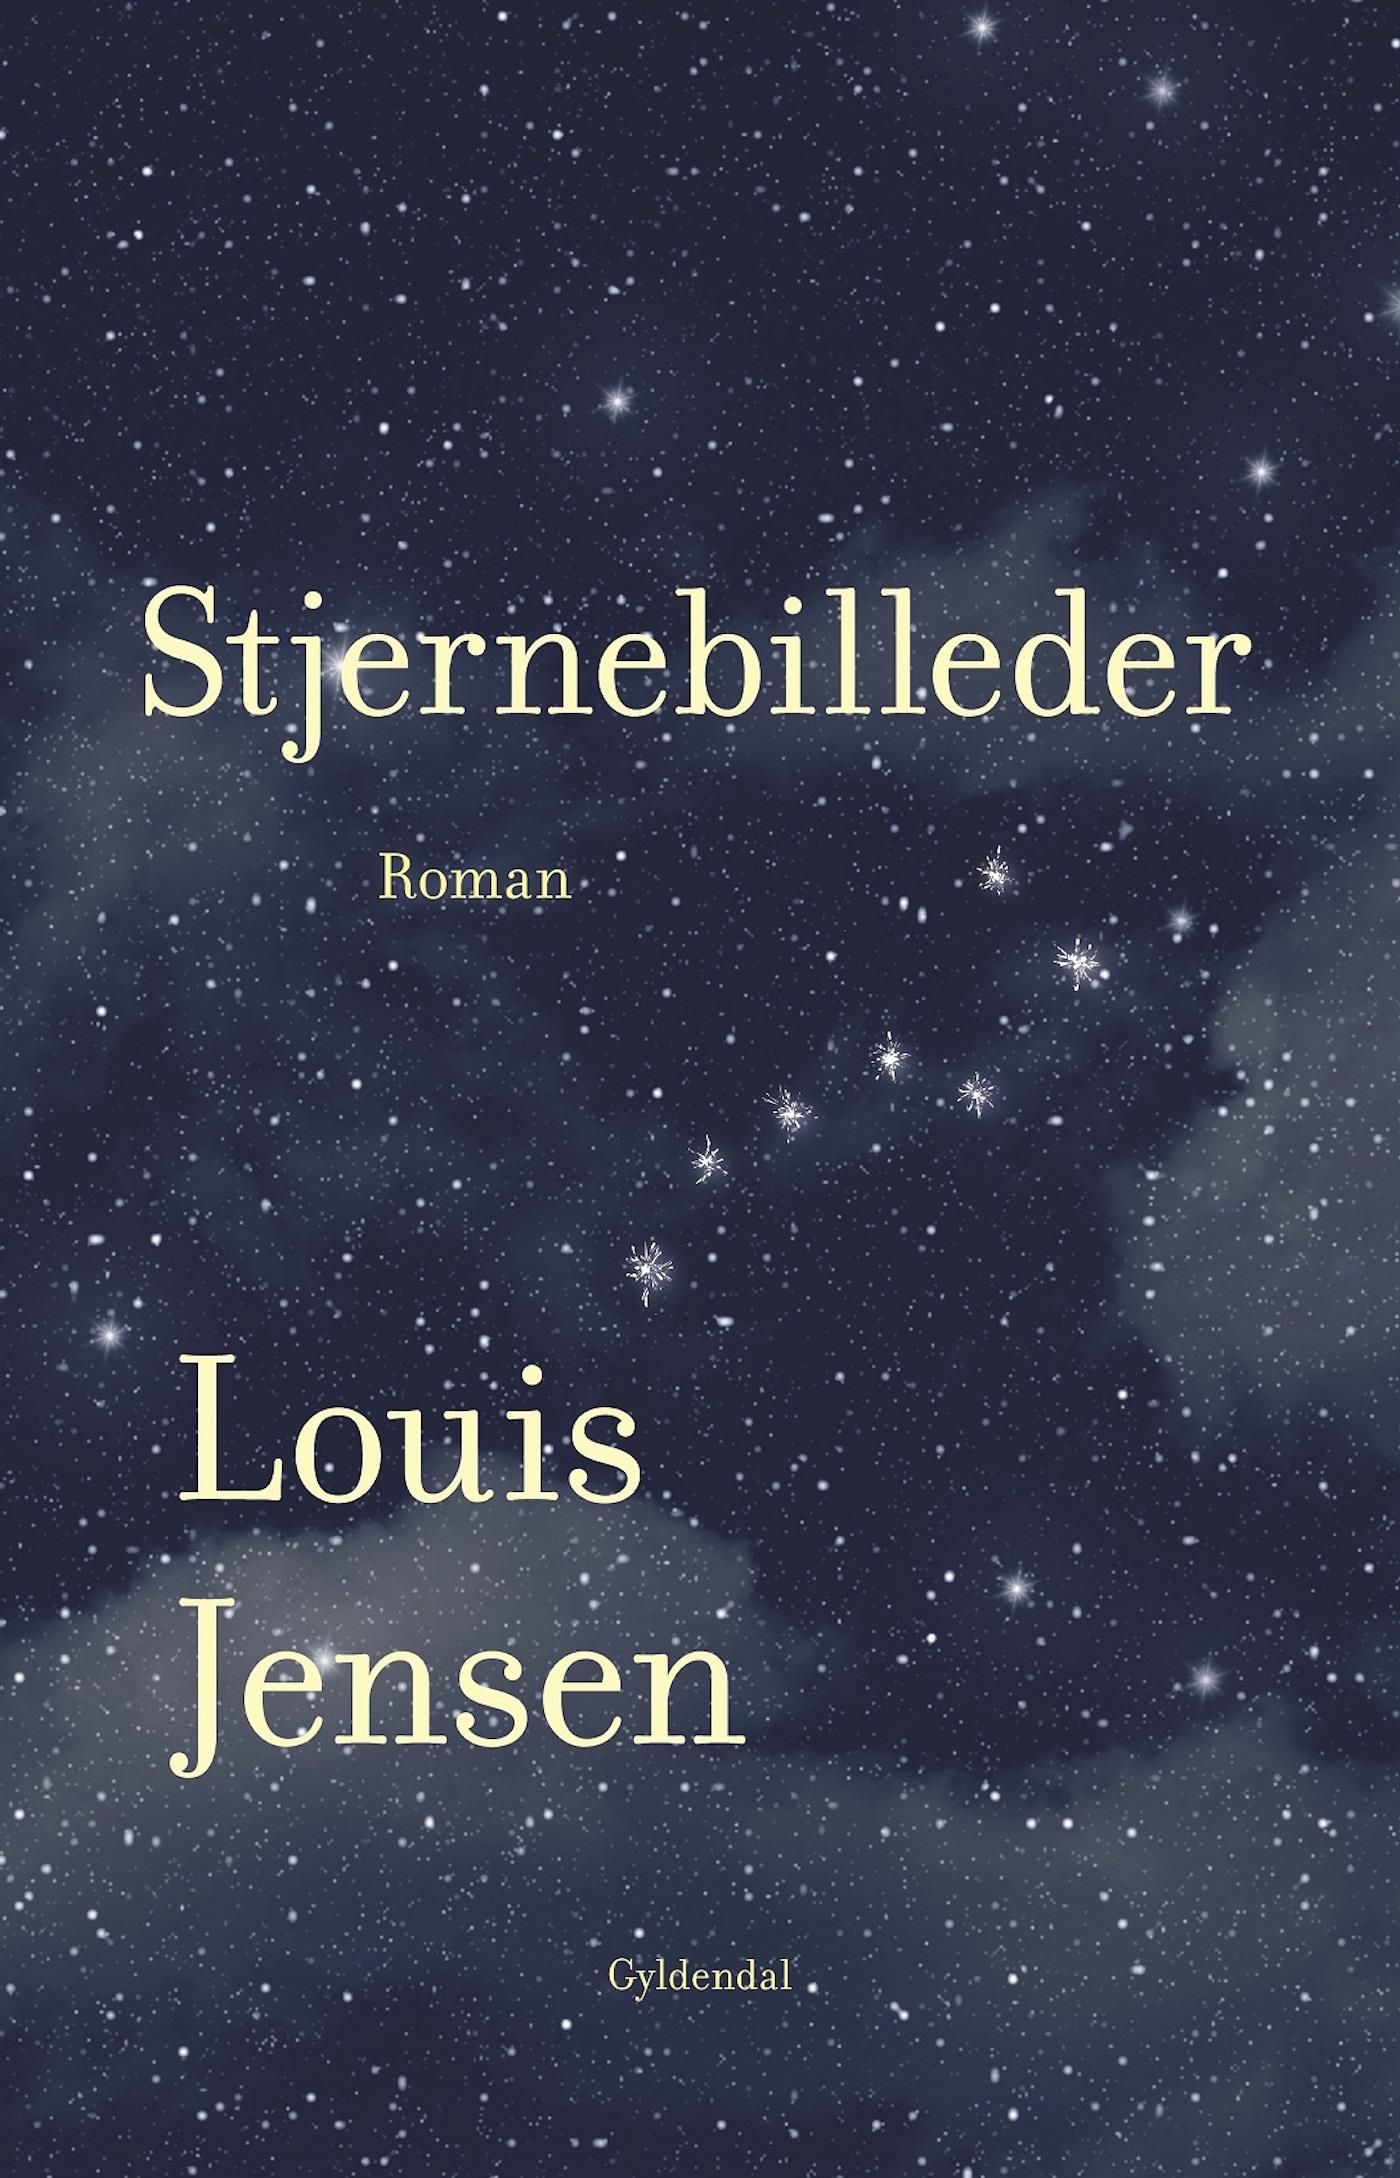 Stjernebilleder, eBook by Louis Jensen